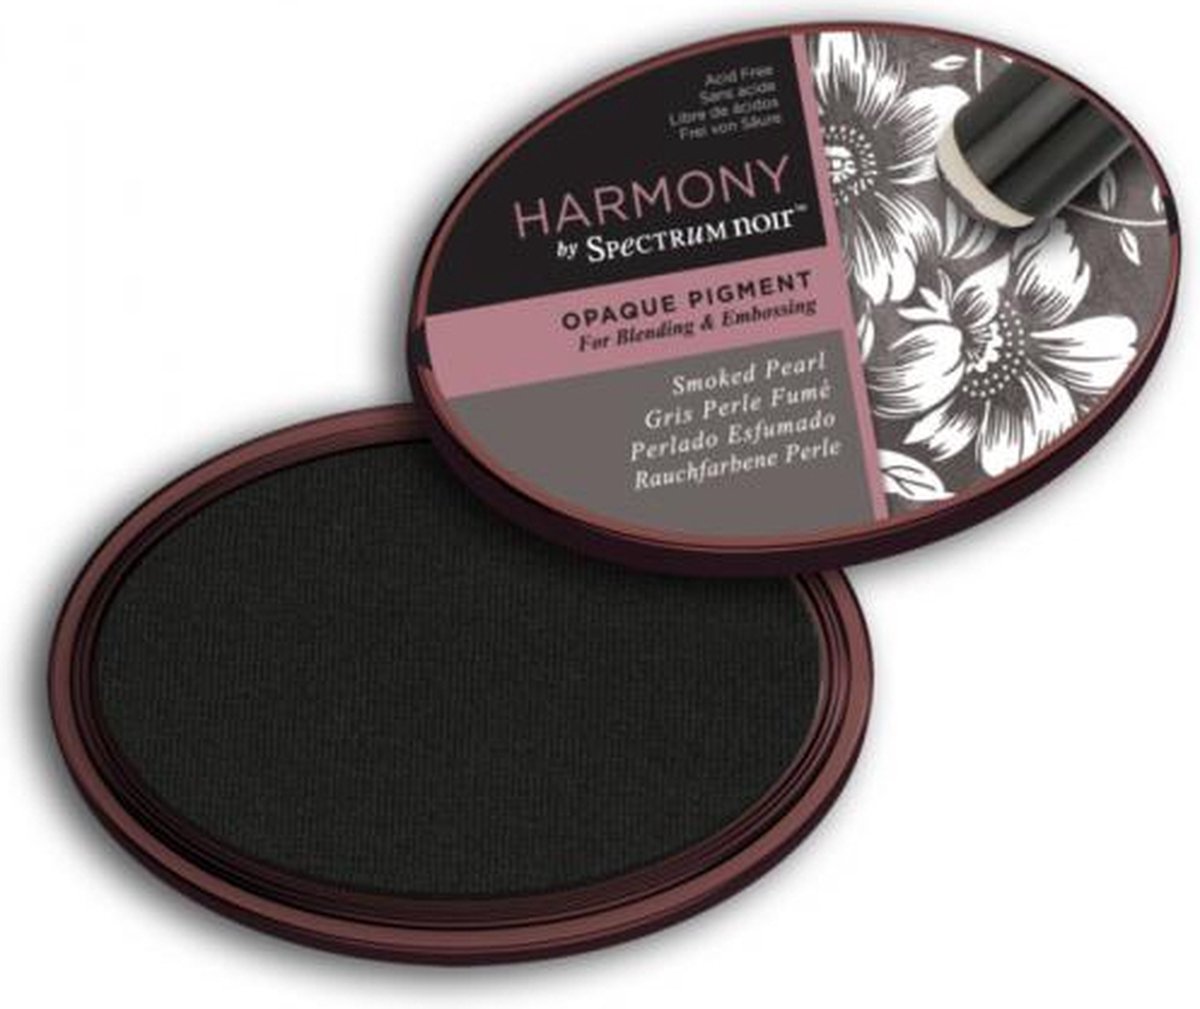 Spectrum Noir Inktkussen - Harmony Opaque Pigment - Smoked Pearl (Rookparelmoer)